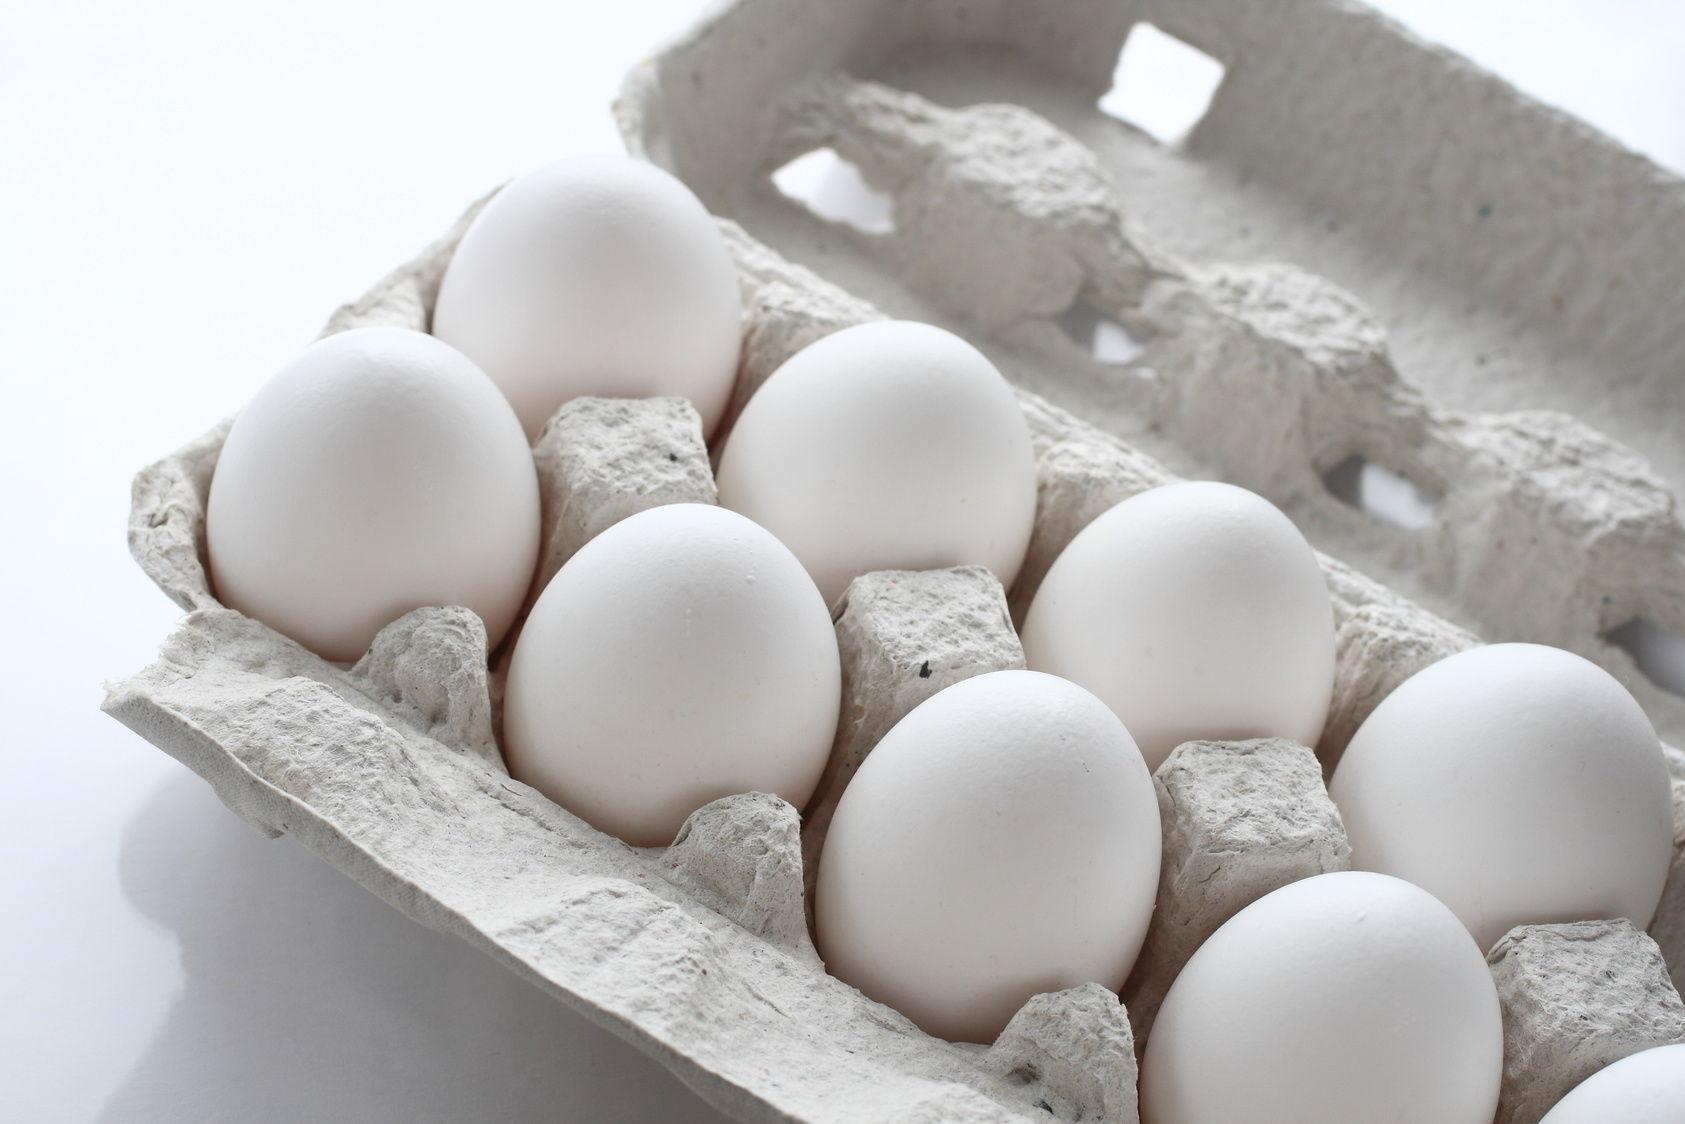 IKKE KAST EGG: Selv etter syv måneder er det helt trygt å spise norske egg, viste en undersøkelse fra Matforsk. Foto: NTB scanpix